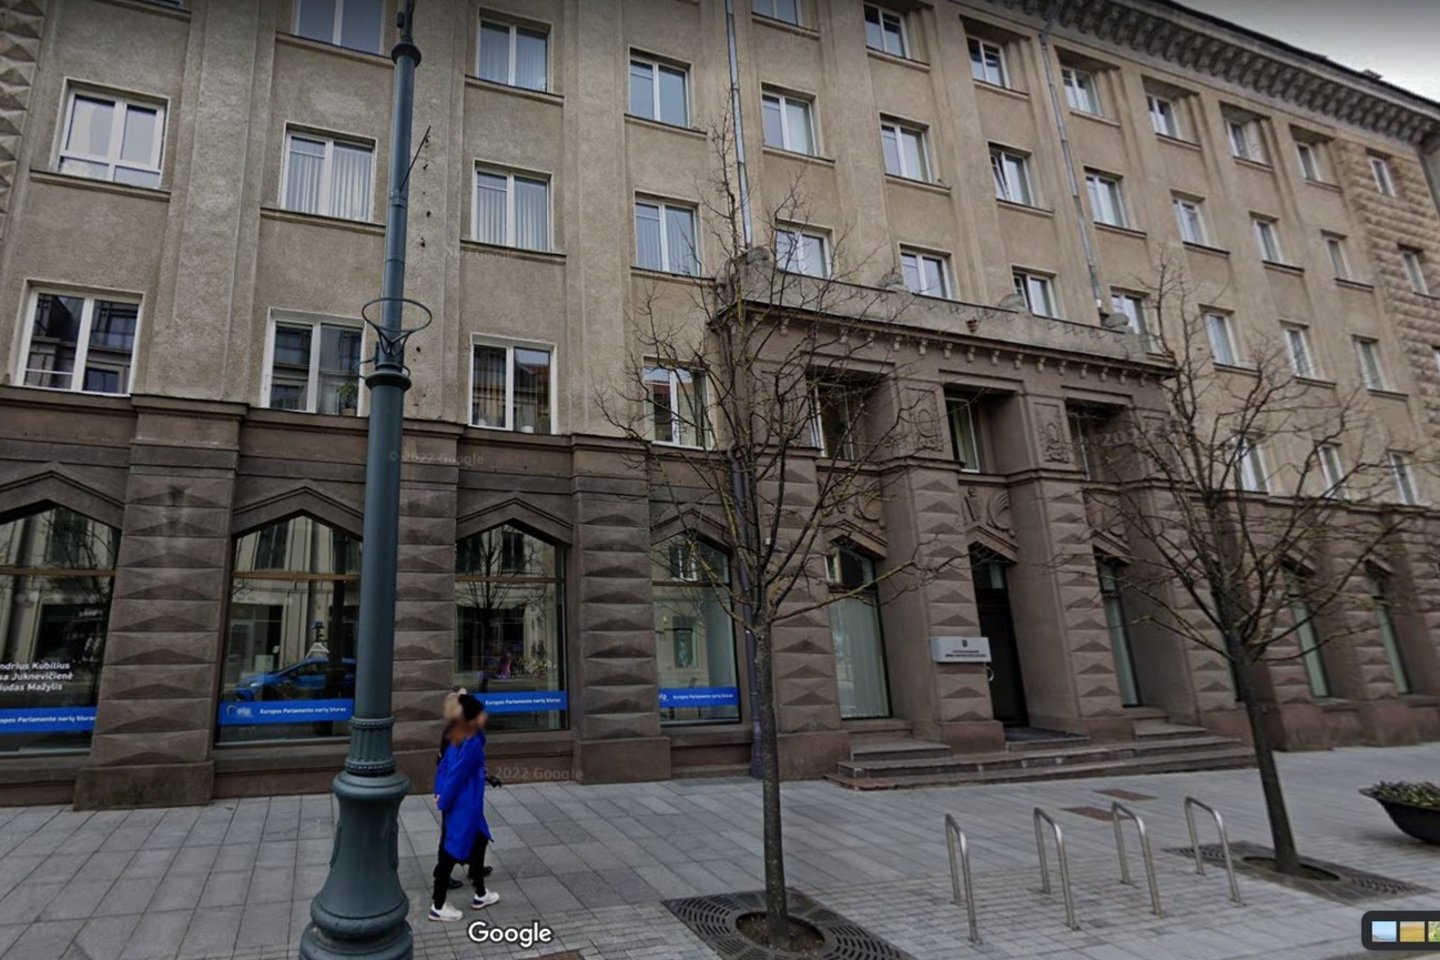  Šiame pastate Vilniaus centre įsikūrusi Seimo kontrolierių įstaiga.<br>google.com/maps nuotr.